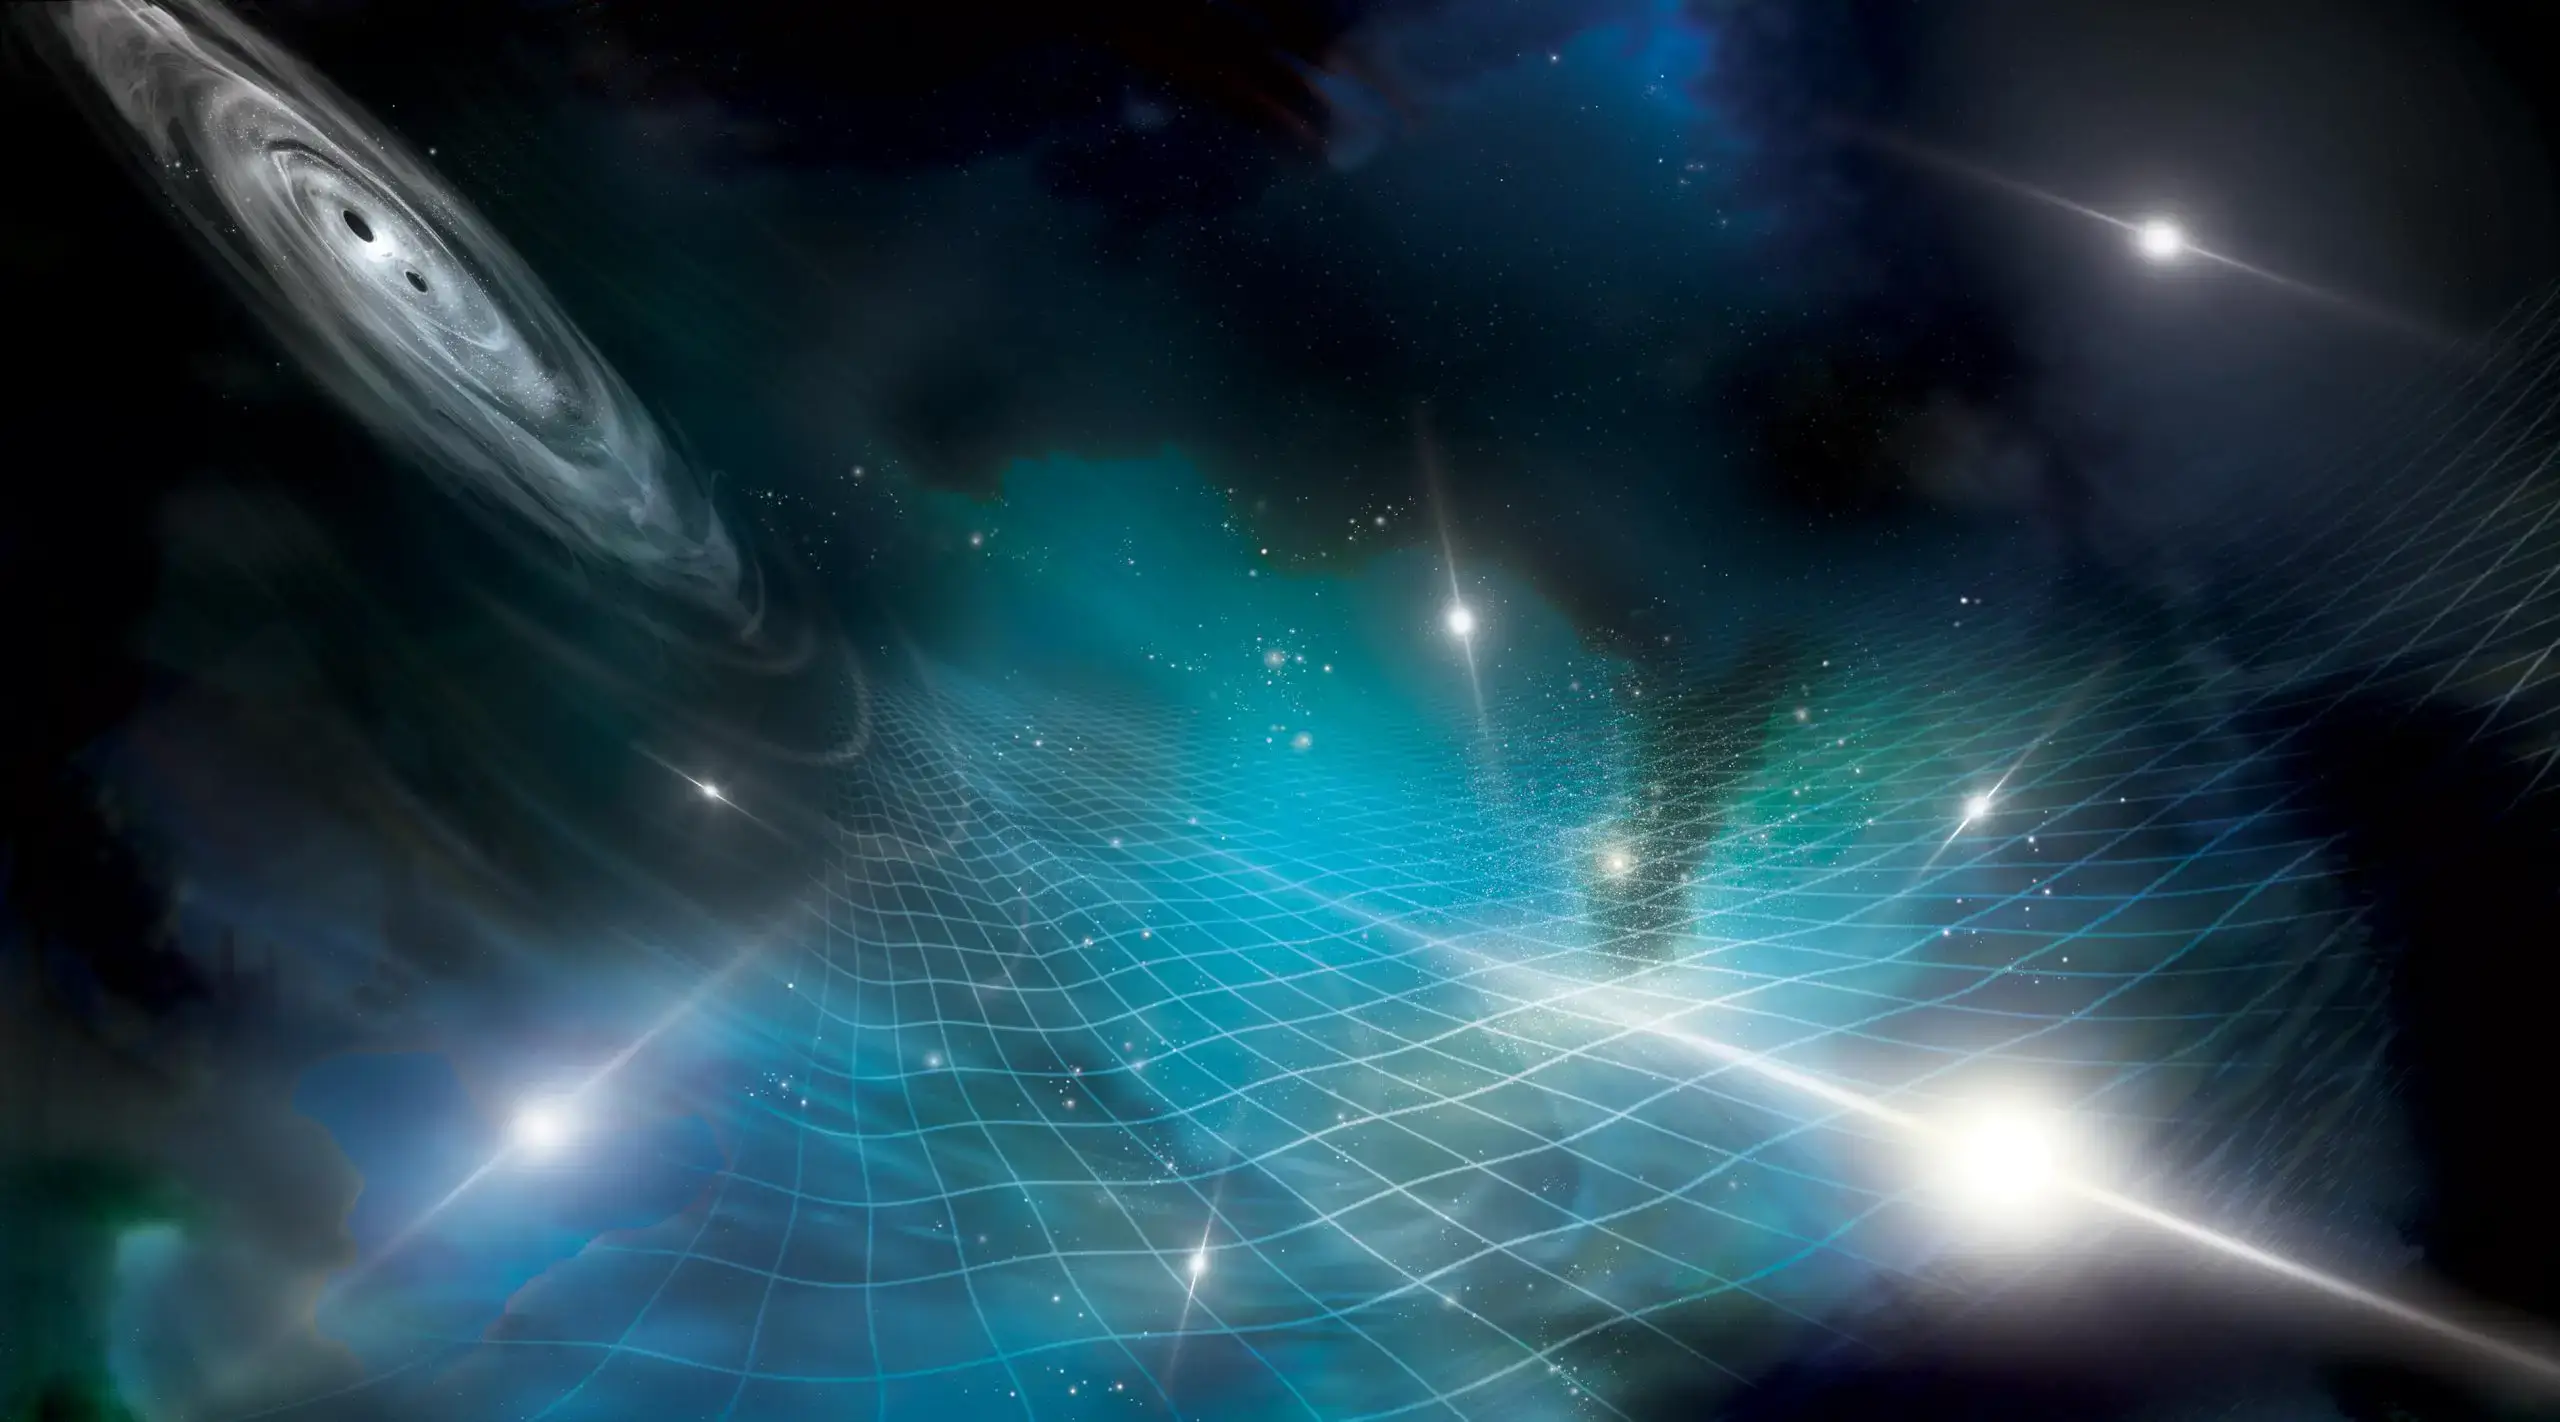 בהתרשמות אמן זאת, זוג חורים שחורים על-מסיביים (למעלה משמאל) פולטים גלי כבידה שמתפשטים במארג המרחב-זמן. גלי כבידה אלה דוחסים ומותחים את המסלולים של גלי רדיו שפולטים פולסרים (בלבן). על ידי מדידה קפדנית של גלי הרדיו, צוות מדענים גילה לאחרונה לראשונה את רקע גלי הכבידה של היקום. קרדיט: Aurore Simonnet for the NANOGrav Collaboration
